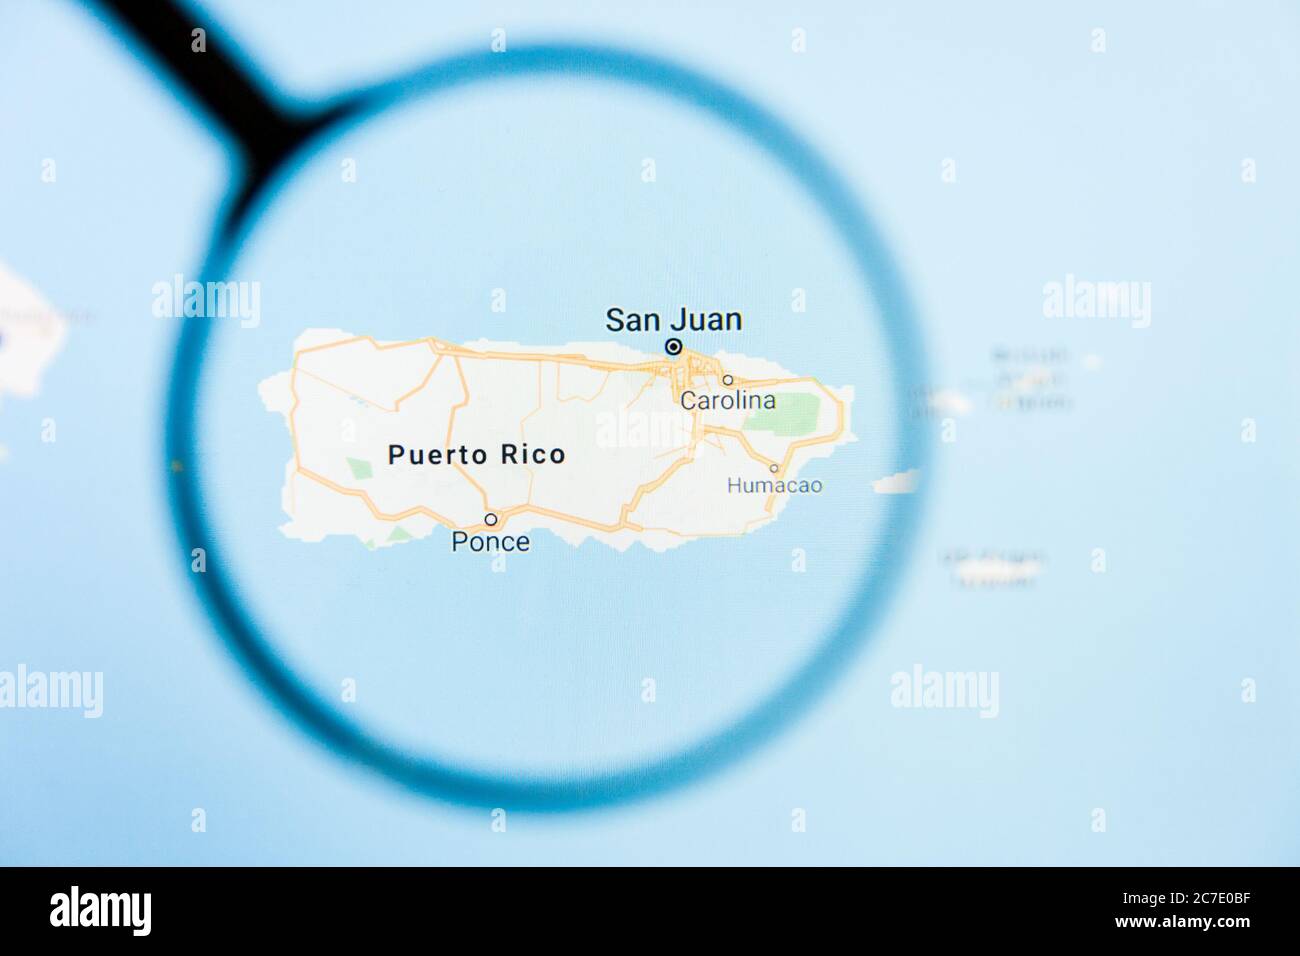 Los Angeles, California, USA - 15. März 2019: Puerto Rico, PR State of America Visualisierung illustratives Konzept auf dem Bildschirm durch Vergrößerungen Stockfoto